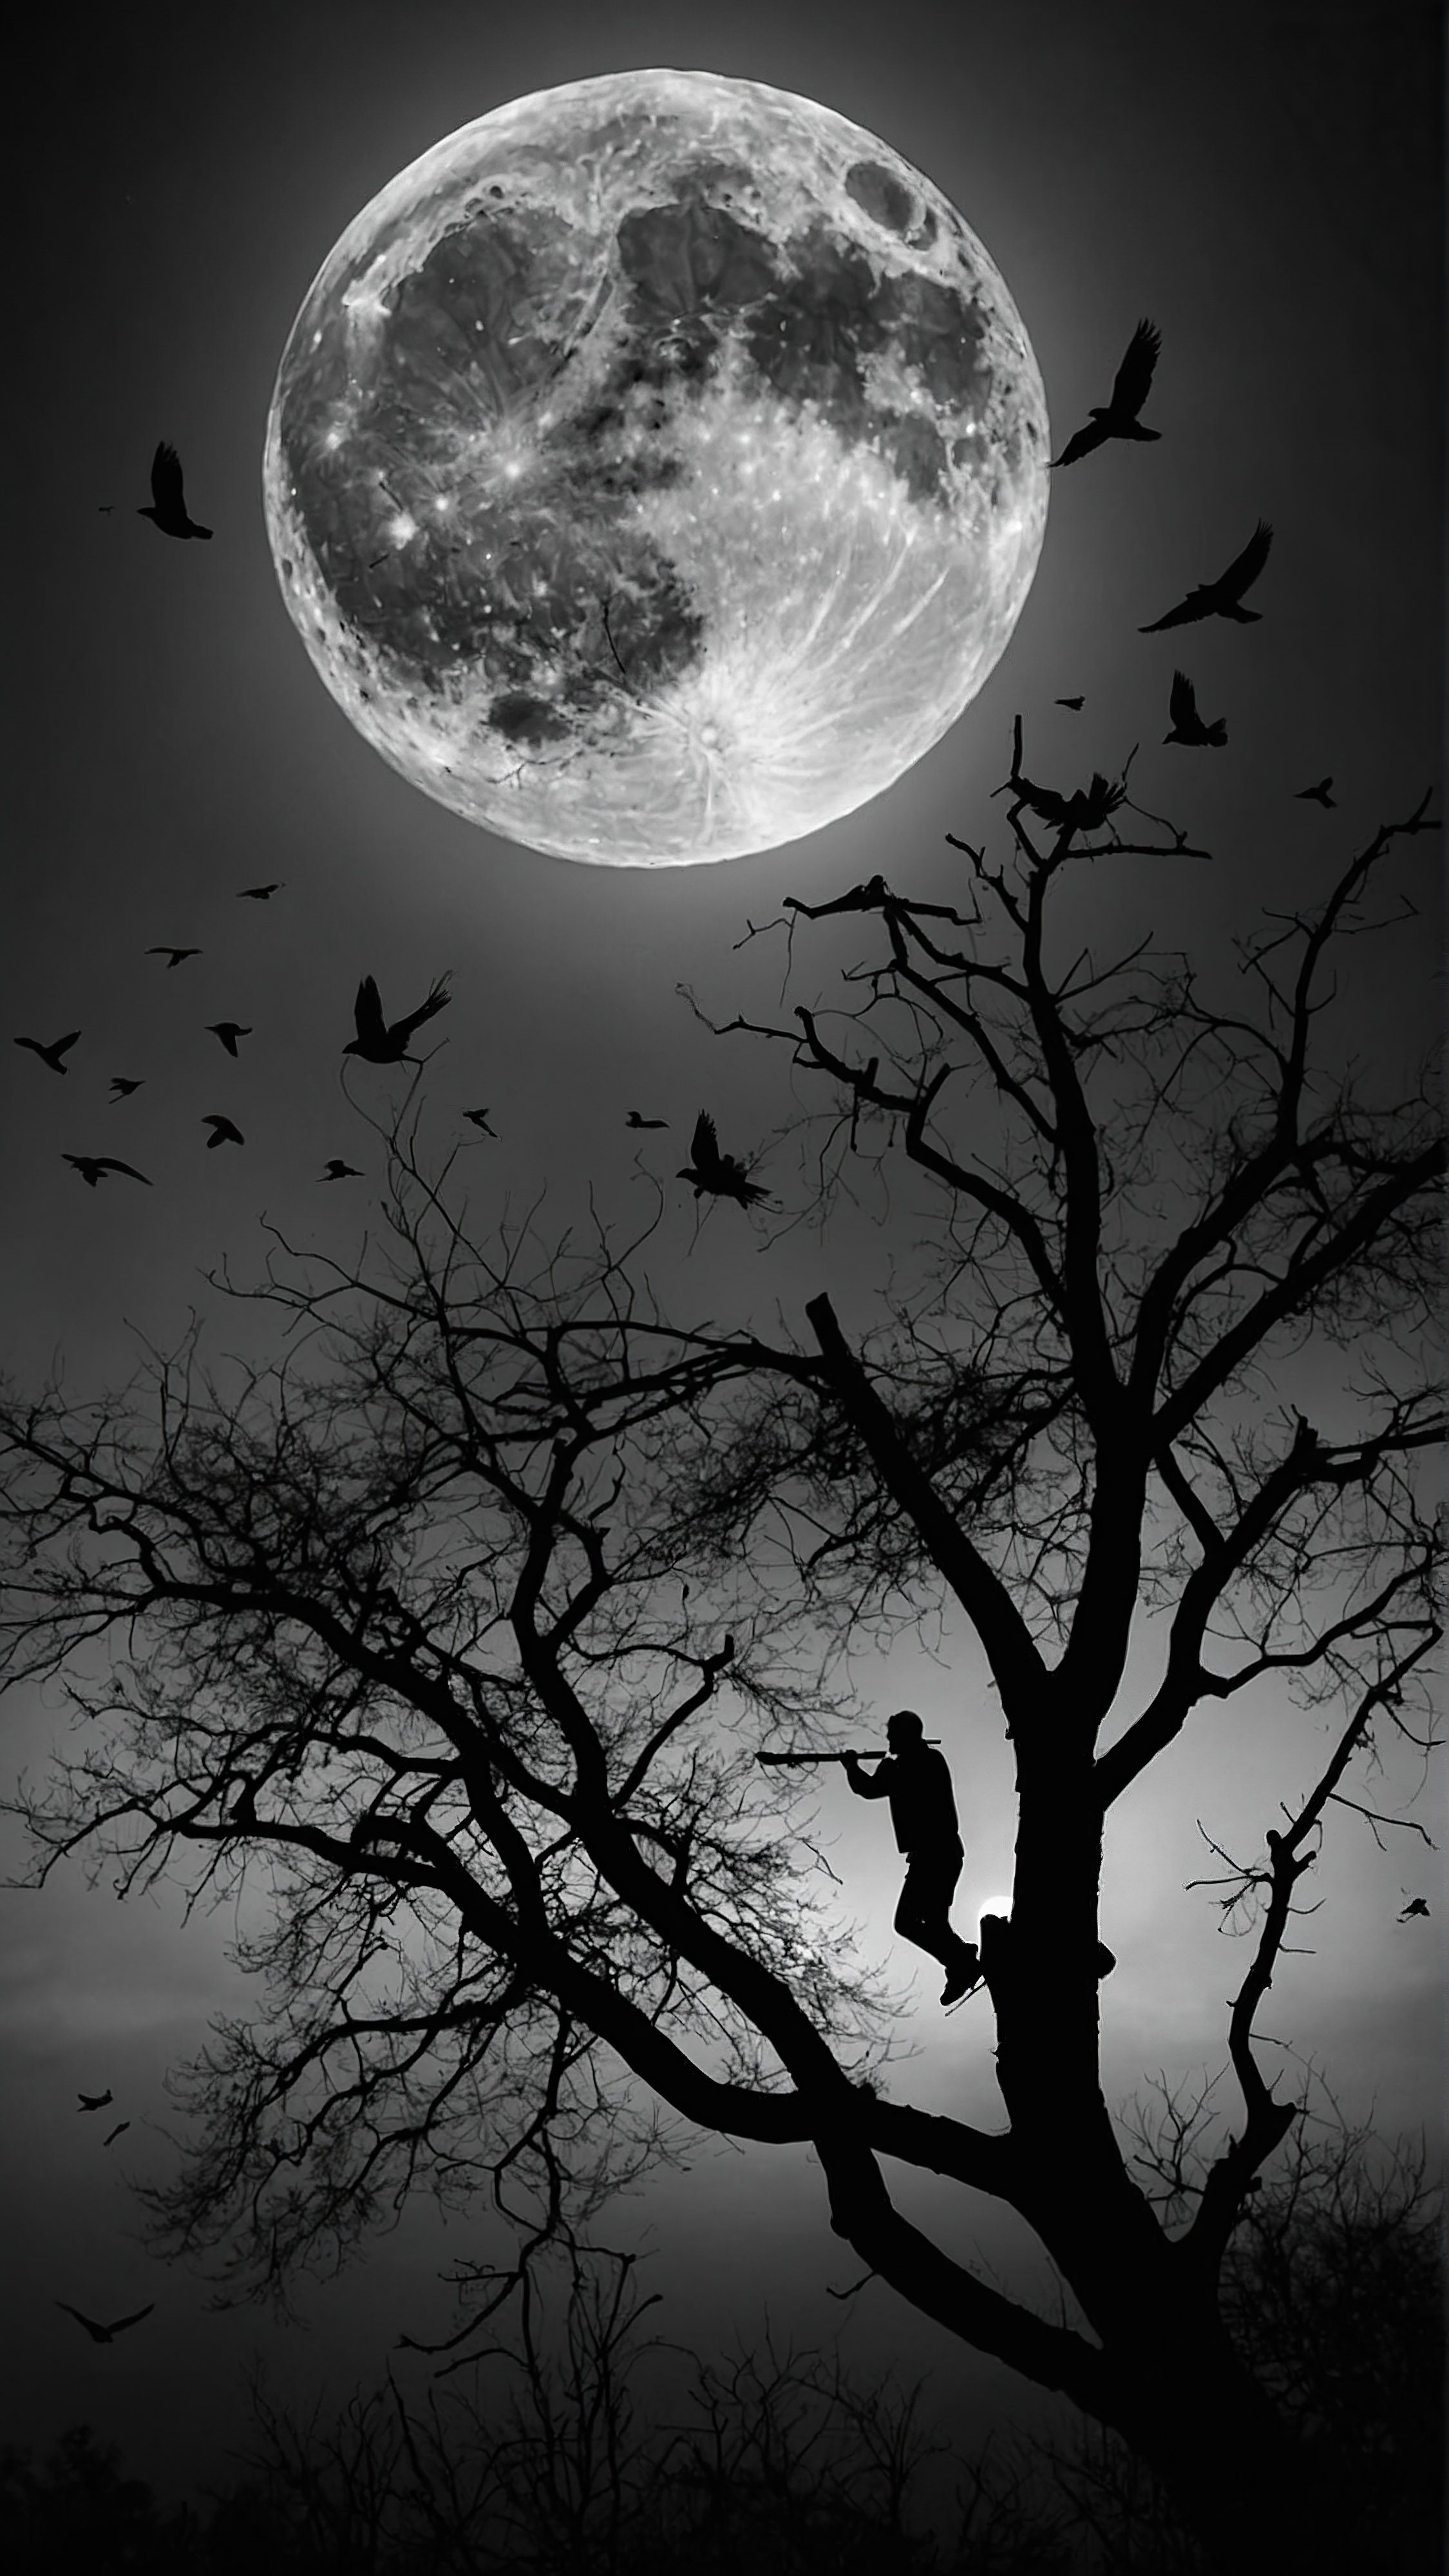 Vivez la tranquillité avec un fond d'écran esthétique noir et blanc pour votre iPhone, présentant une silhouette de personne assise sur une branche d'arbre, jouant de la flûte sur fond de pleine lune, avec des oiseaux volant à travers.